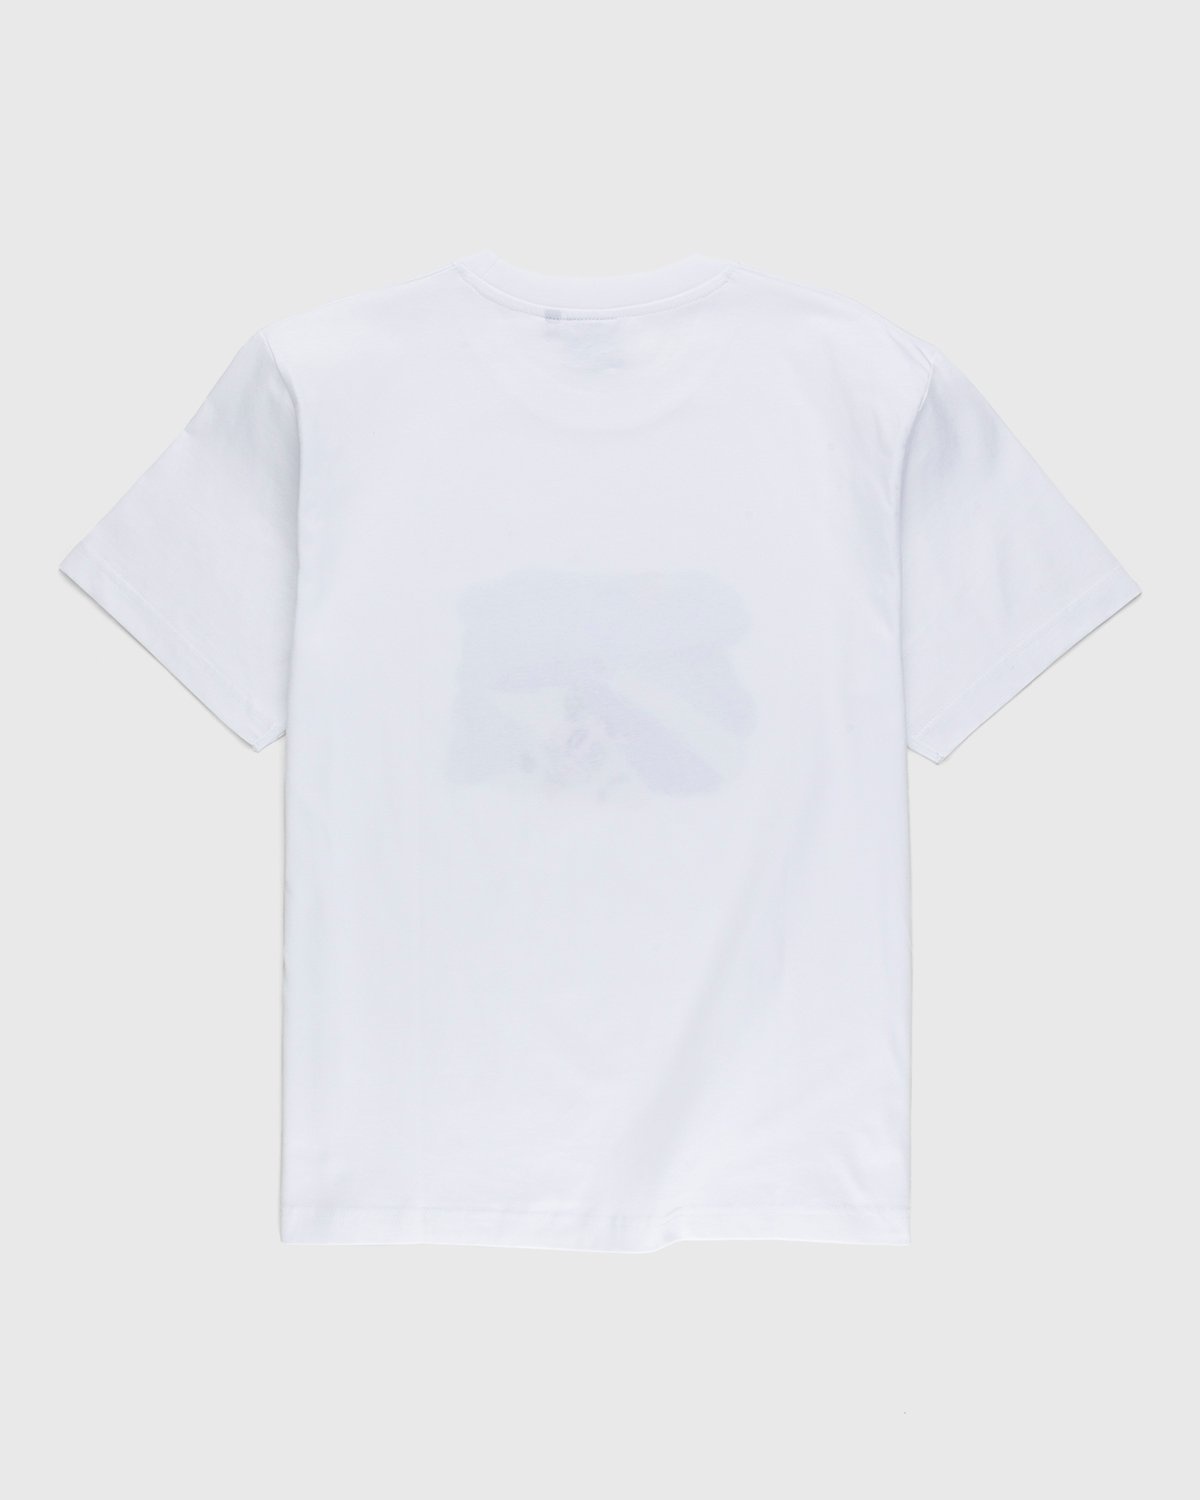 Carne Bollente – Cunni sur la Pelouse T-Shirt White - T-Shirts - White - Image 2